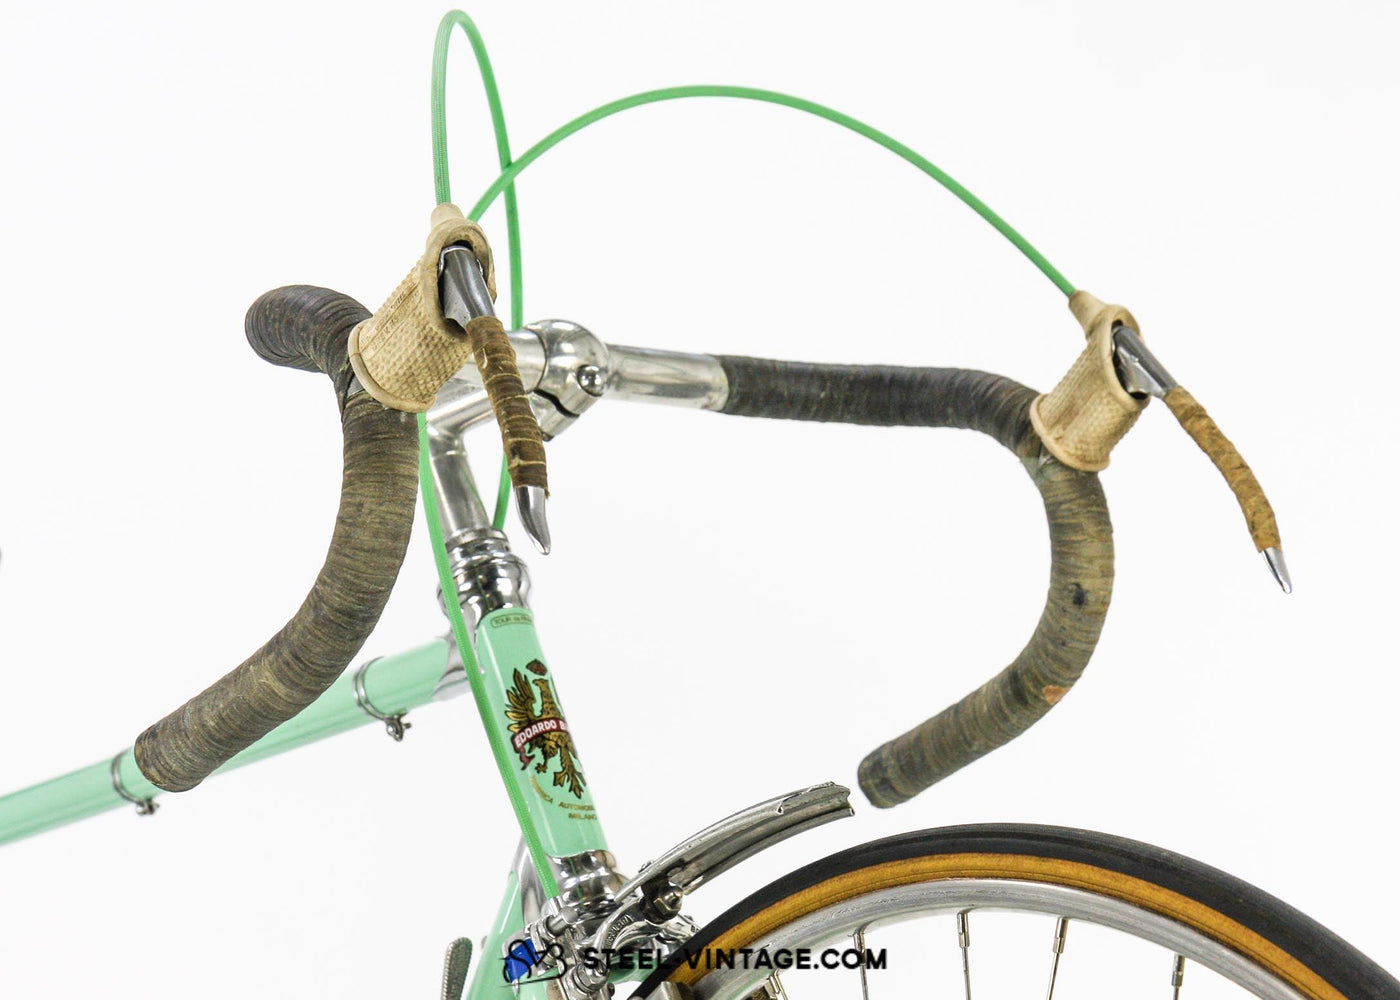 Bianchi Tour de France Collectible Push Bike 1953 - Steel Vintage Bikes